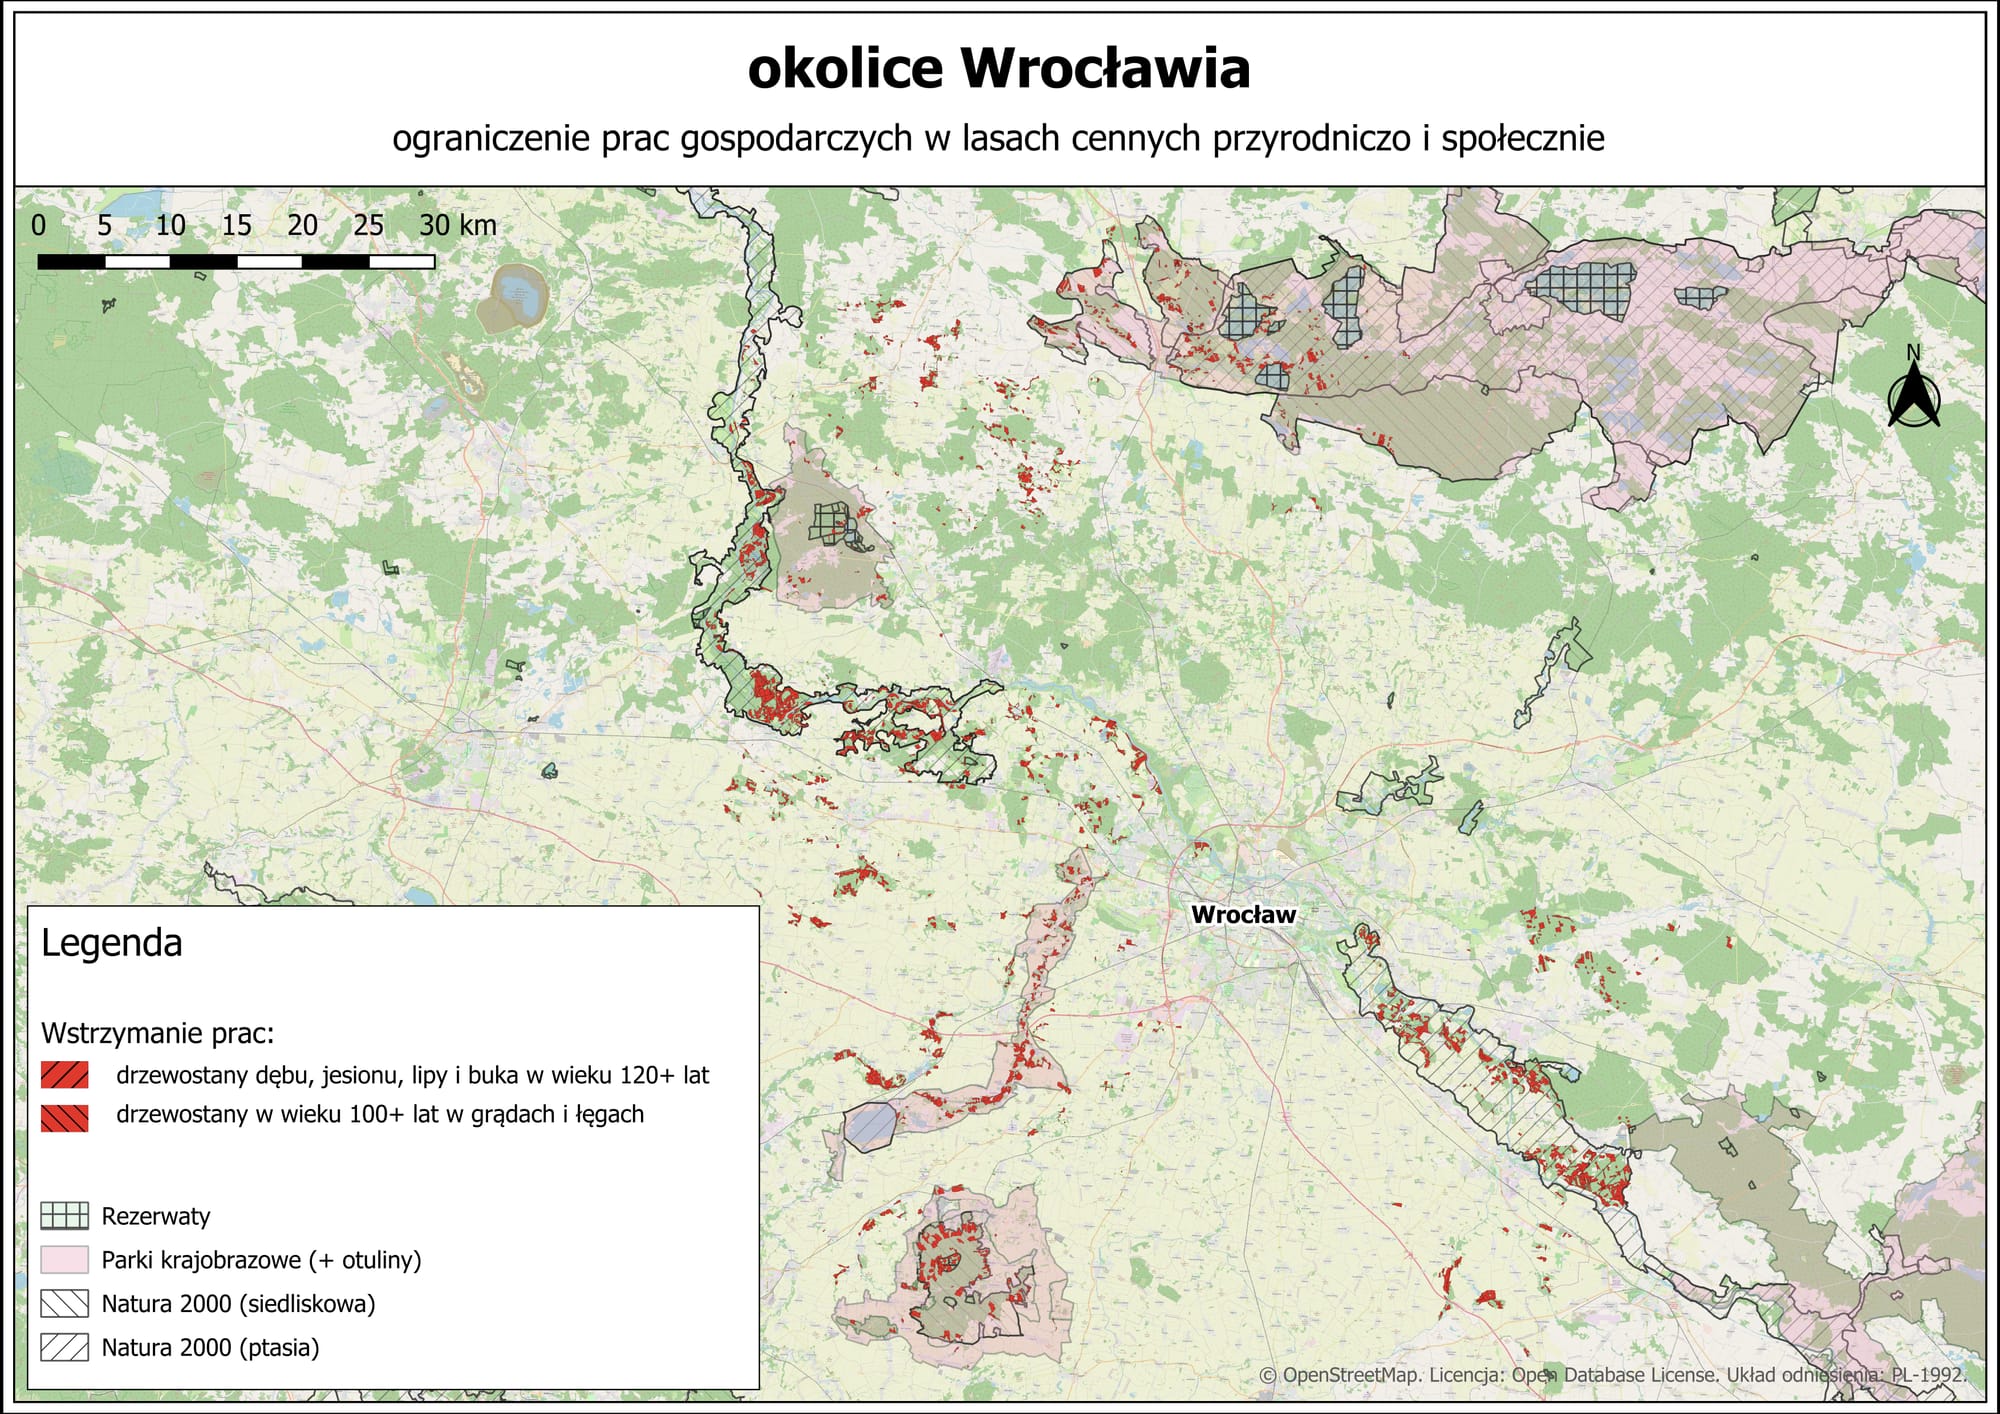 Ministerialne moratorium na wycinkę lasów wokół Wrocławia. Wielki sukces wrocławskich aktywistów i przyrodników!